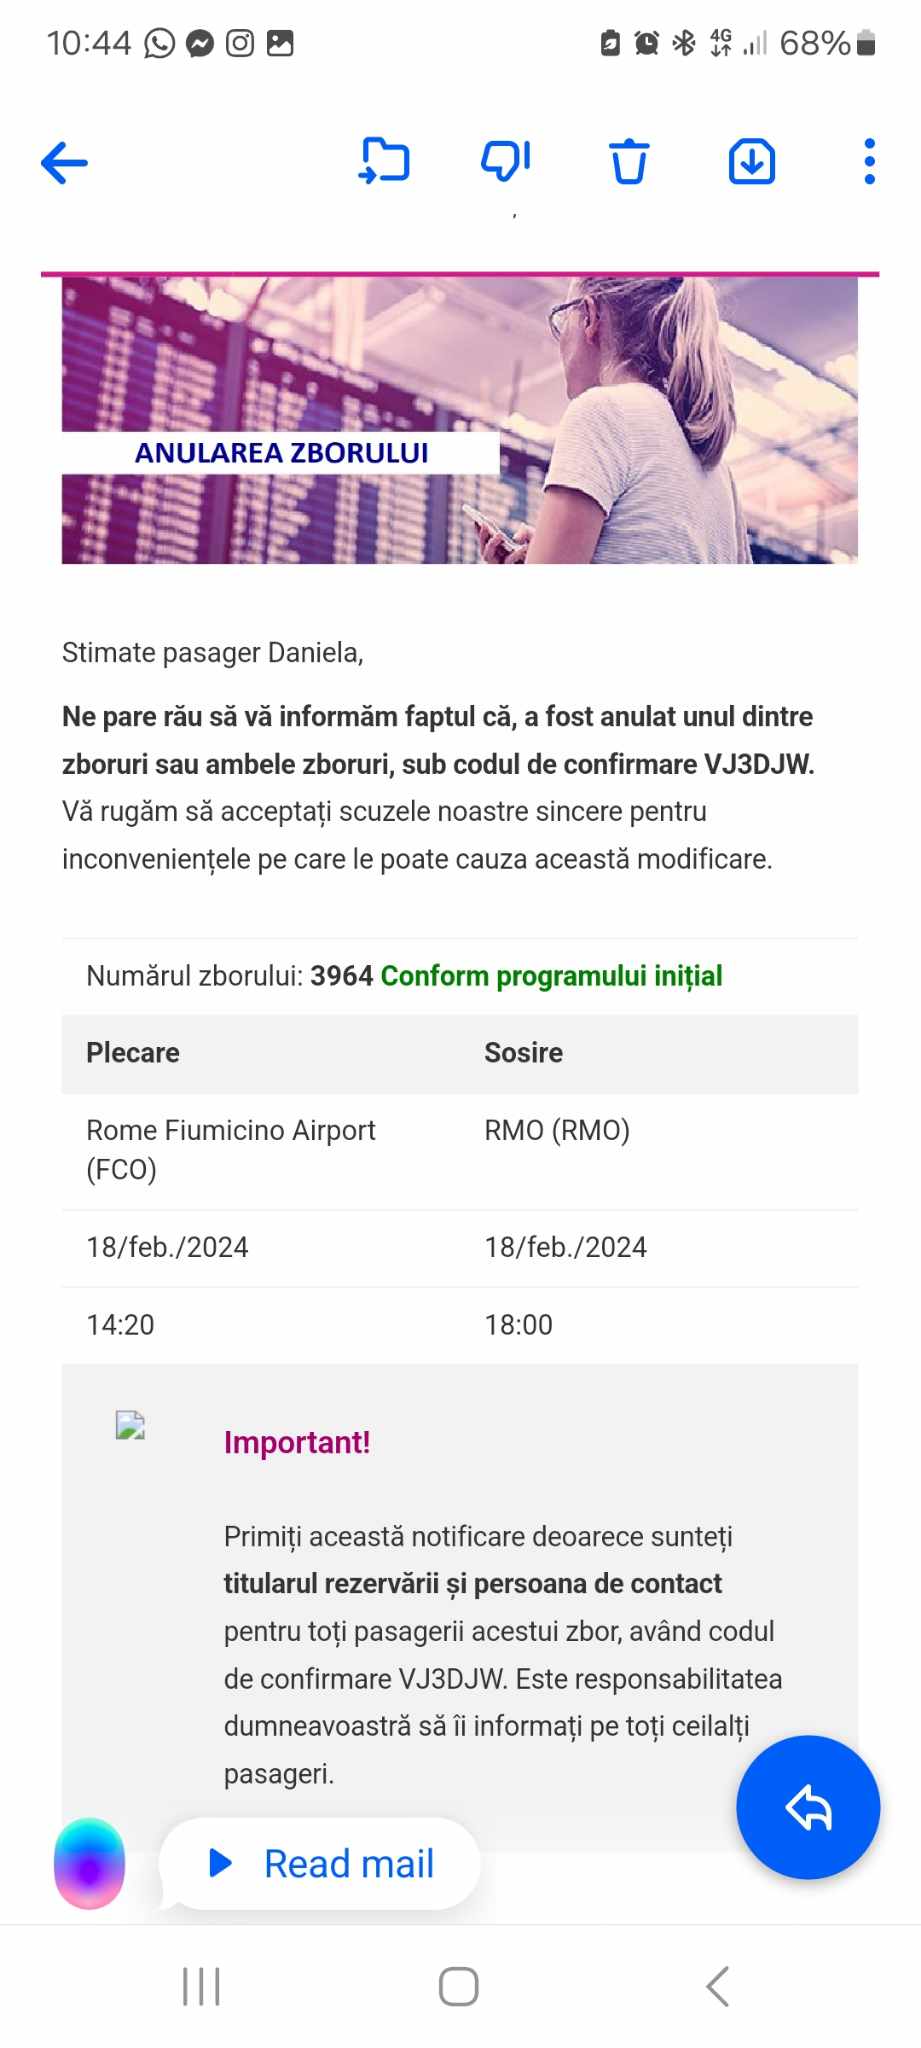 (ОБНОВЛЕНО) Wizz Air отменил рейсы из Кишинева, начиная с 15 января? Что случилось